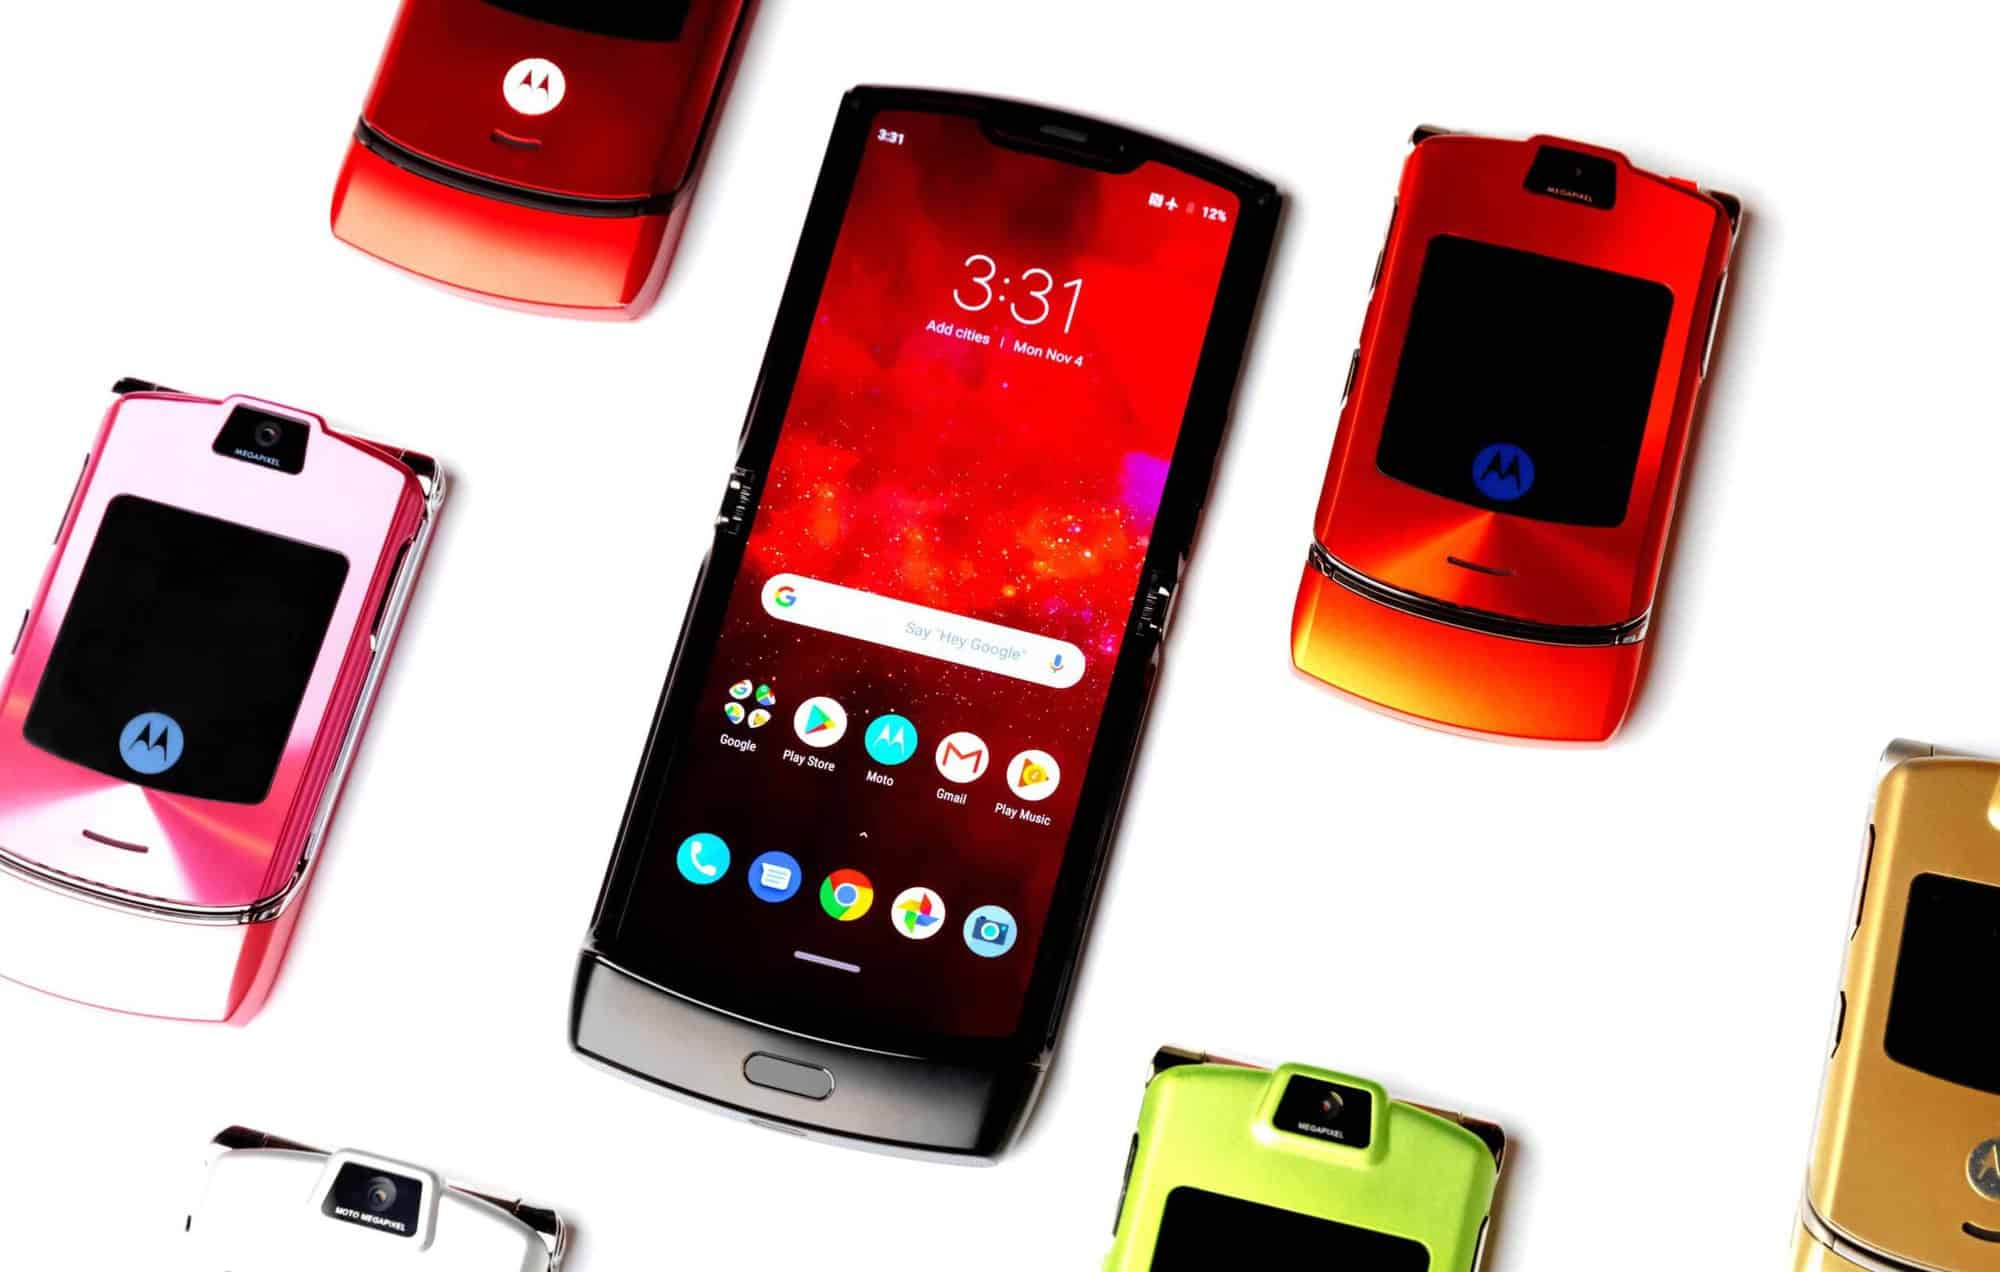 Motorola Razr V3 completa 15 anos; relembre o celular - Olhar Digital